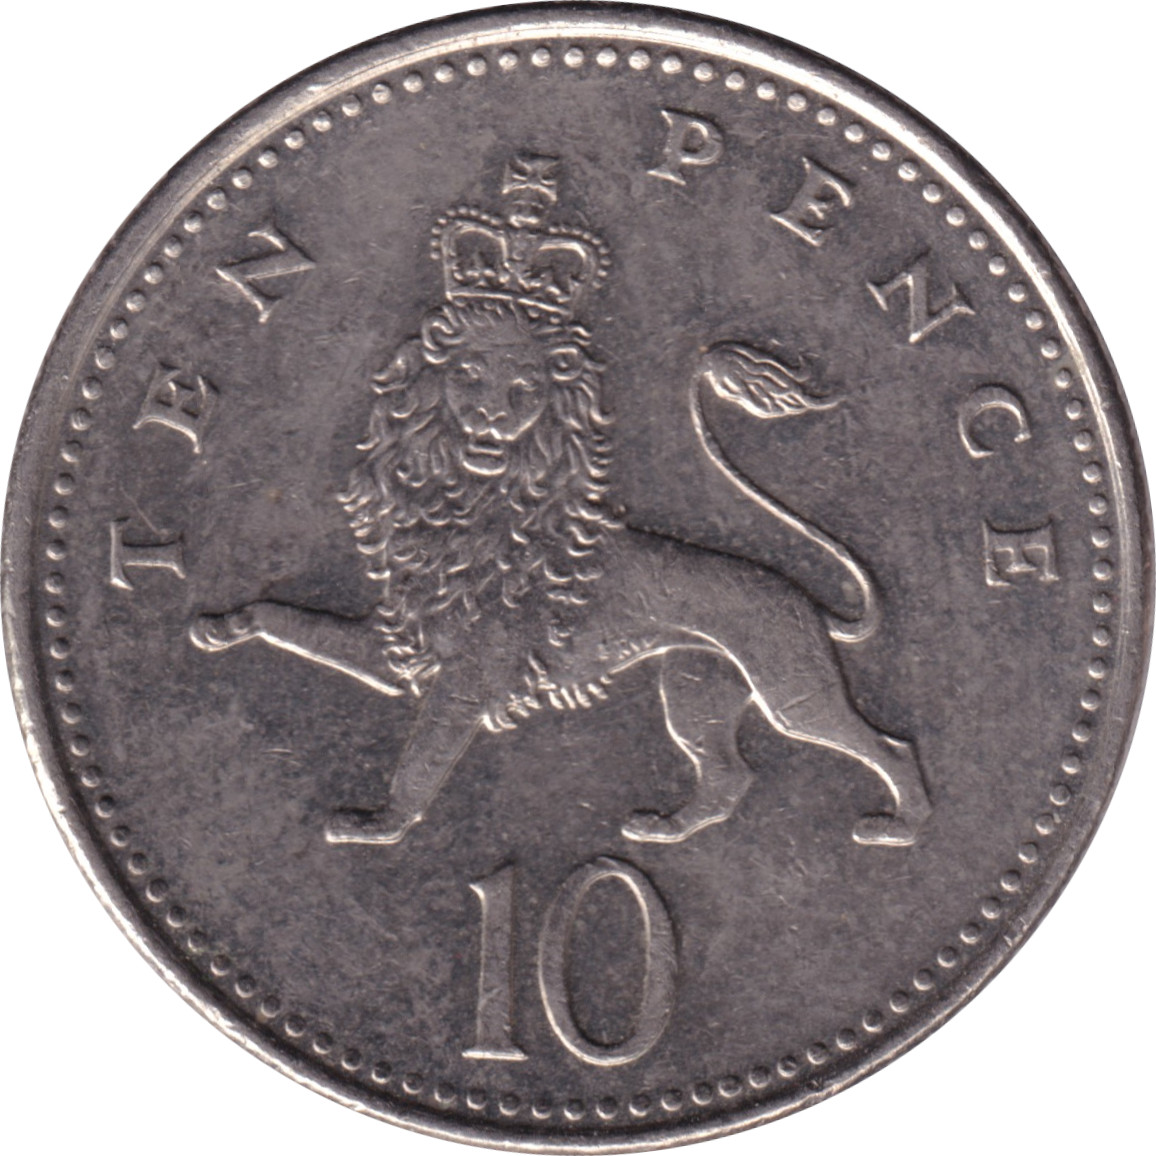 10 pence - Elizabeth II - Tête agée - Lion